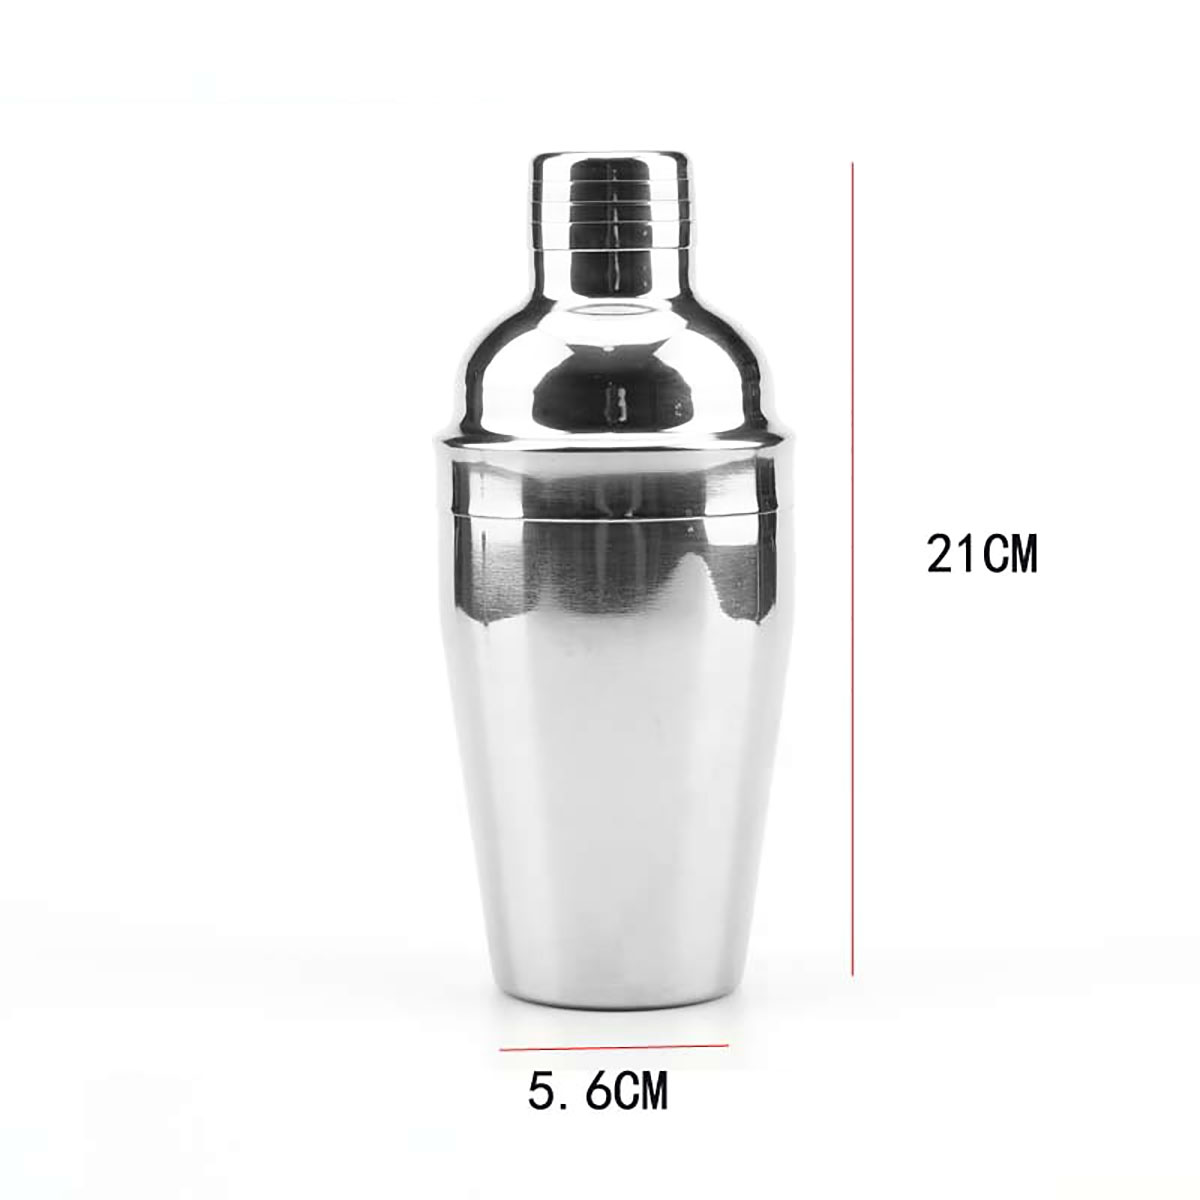 Cocktail-Shaker-Stainless-Steel-Mixer-Bartender-Drink-Strainer-Jigger-Kit-1566615